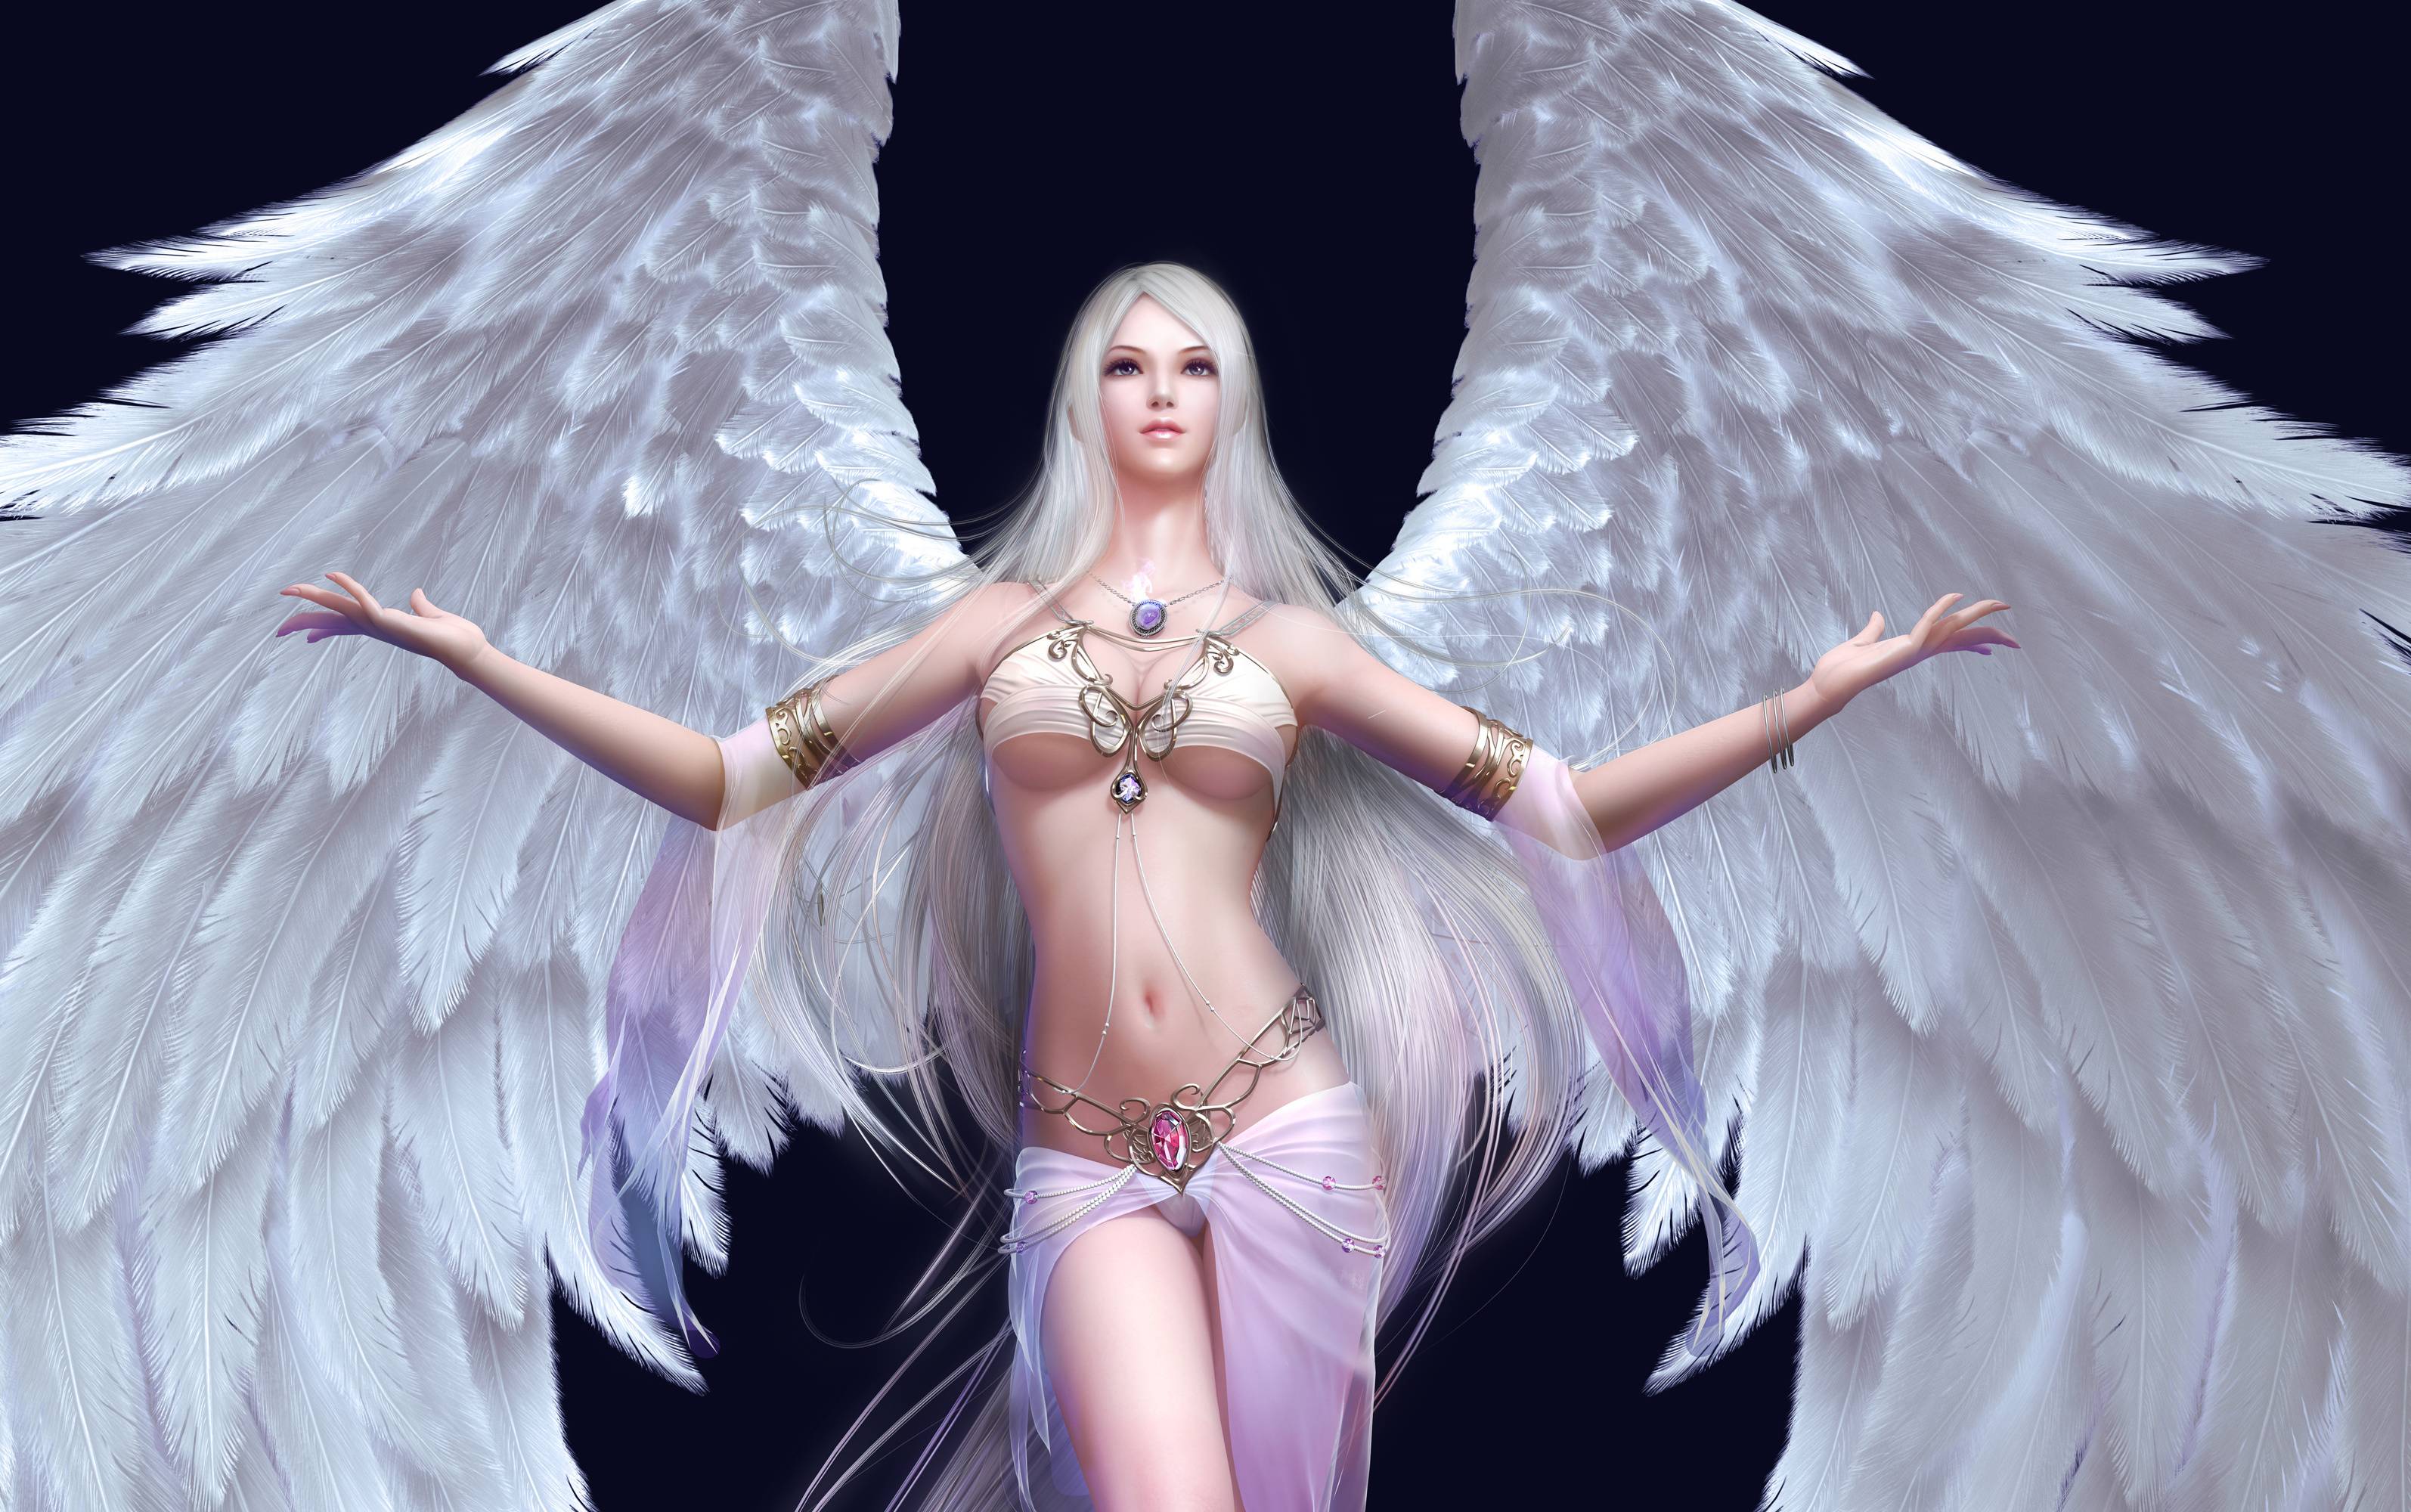 Рисунок ангела с крыльями для детей